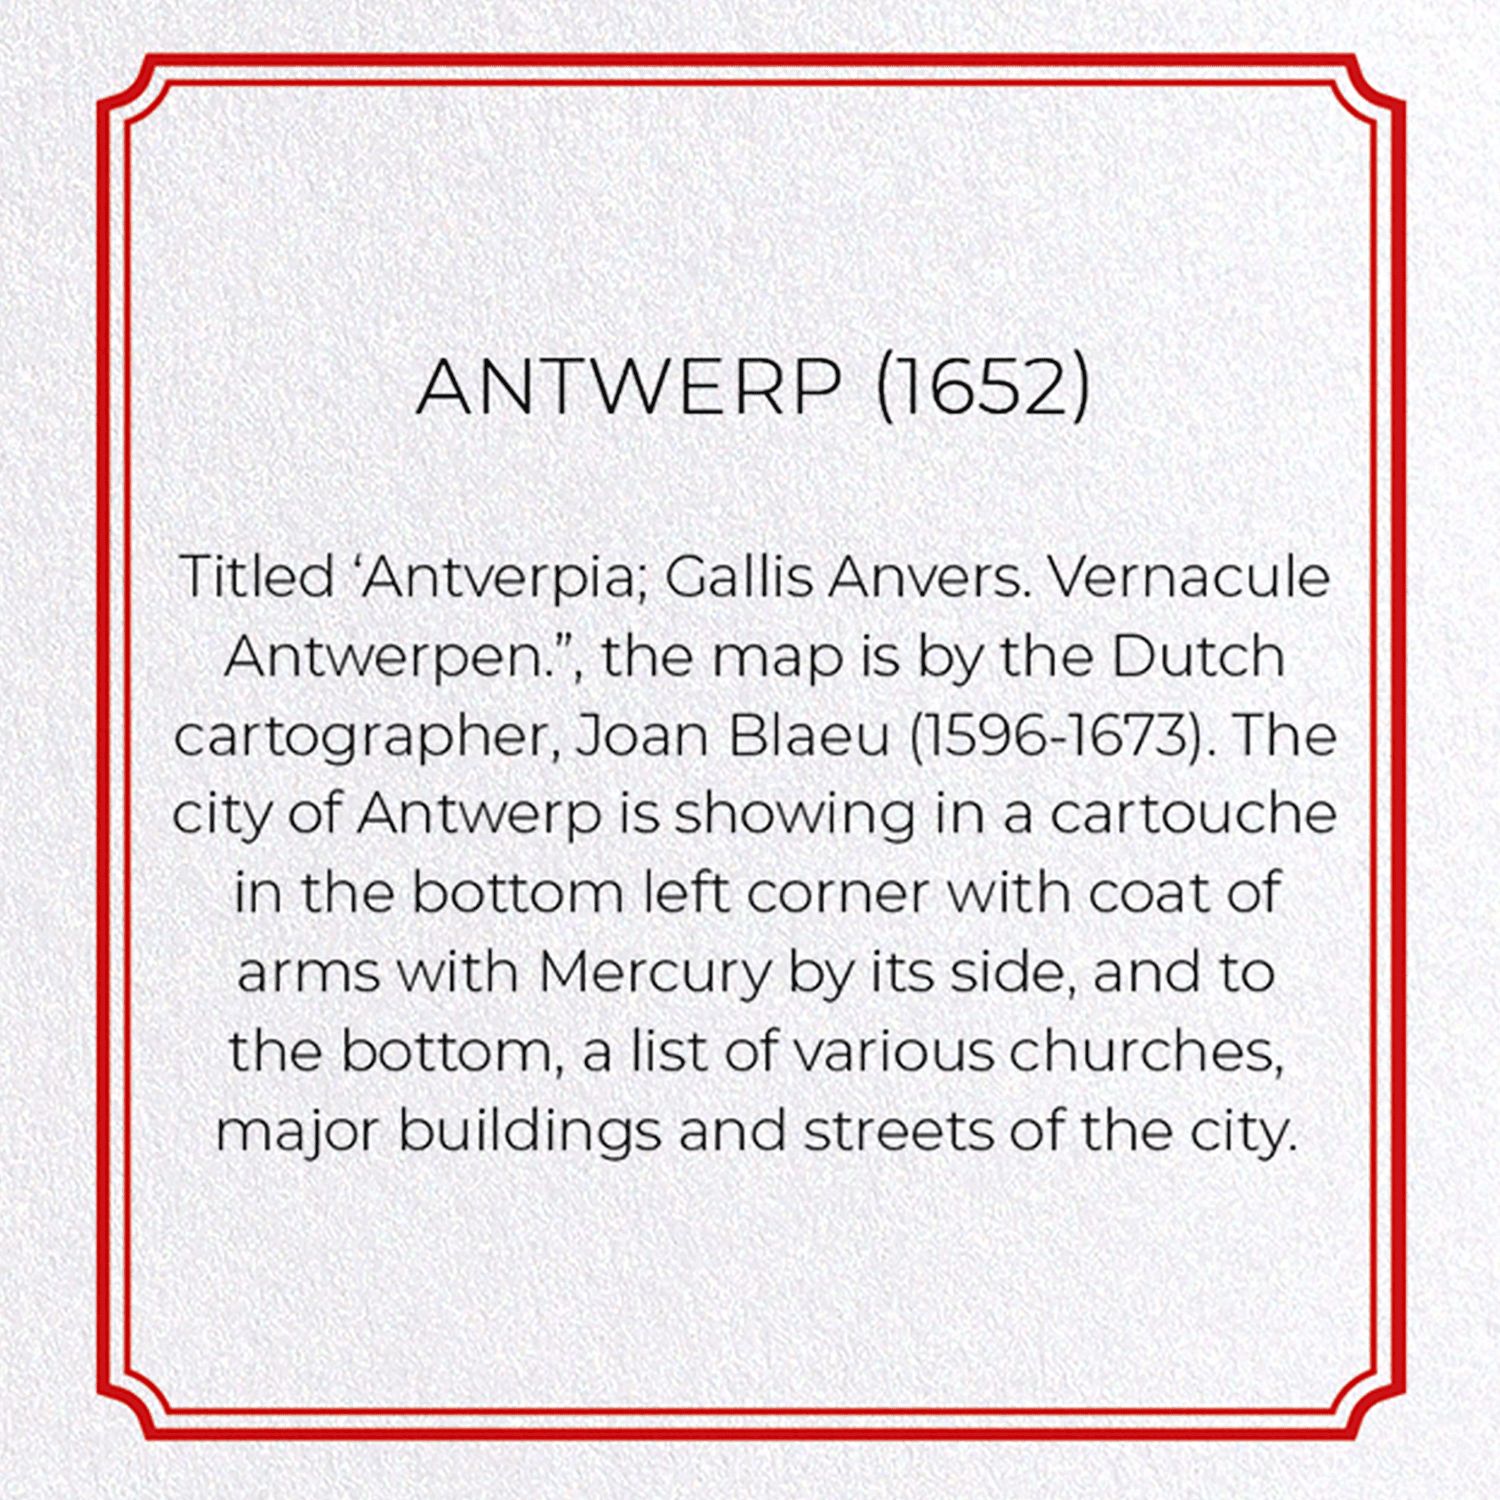 ANTWERP (1652)